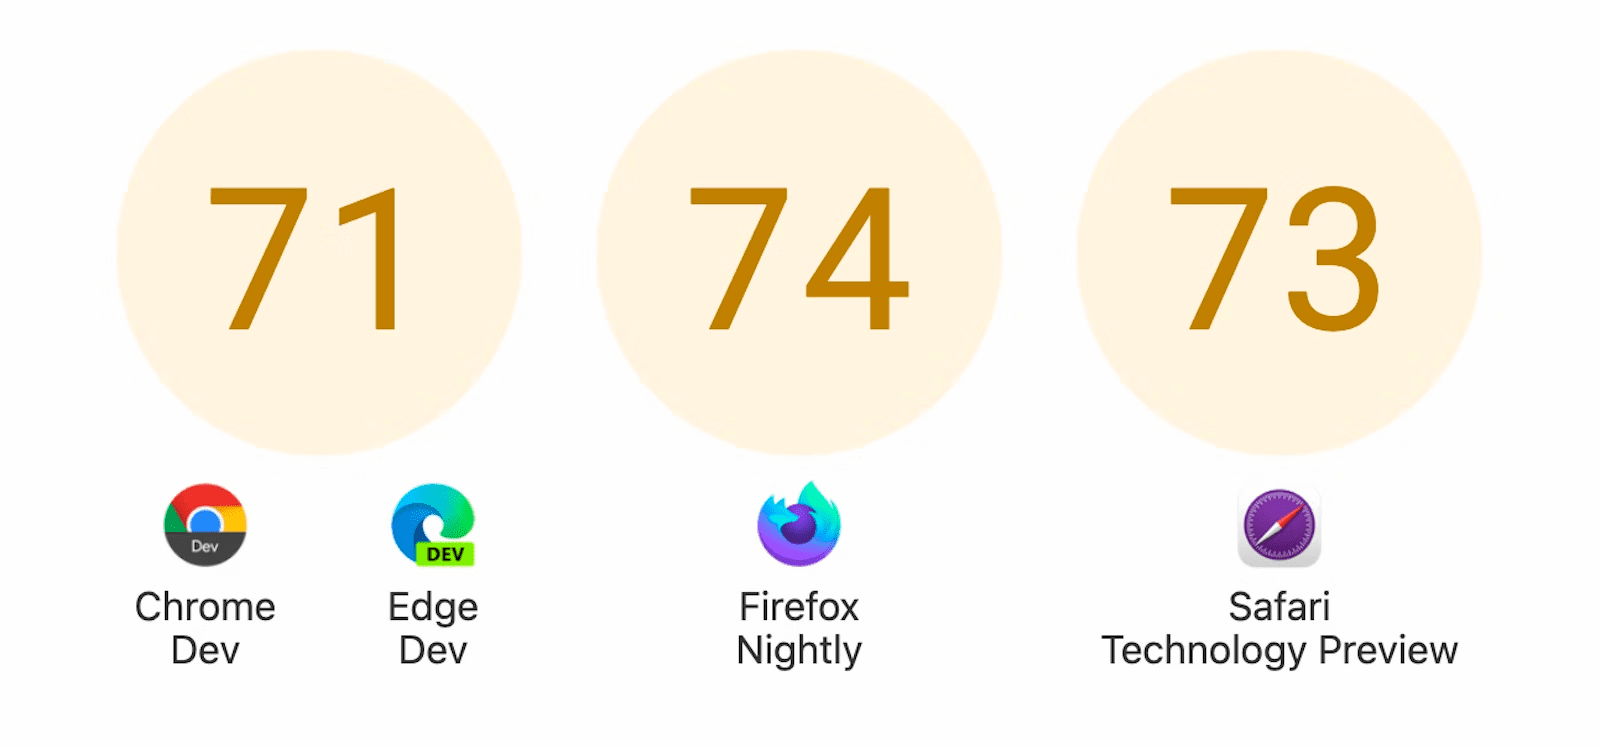 Menampilkan tiga lingkaran dengan skor: 71 untuk Chrome Dev dan Edge Dev, 74 untuk Firefox Nightly, dan 73 untuk Safari Technology Preview.